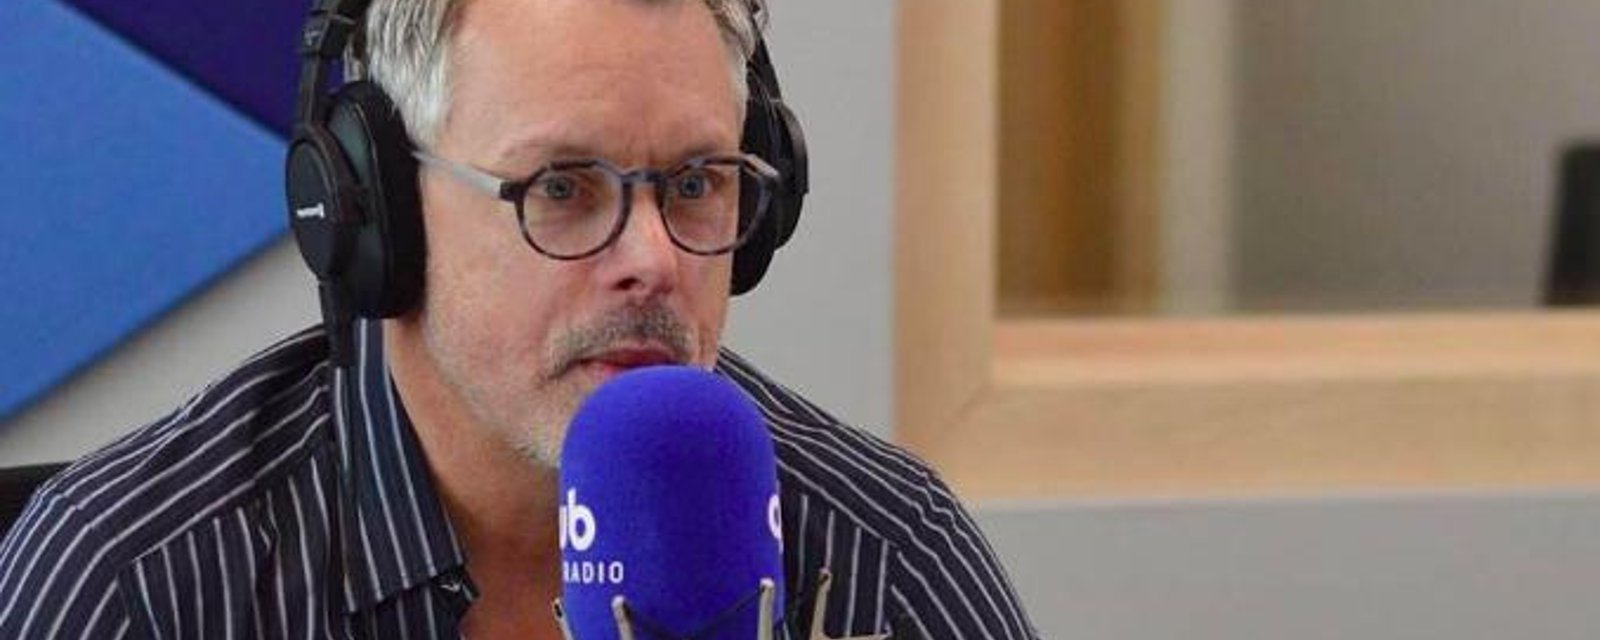 François Lambert lance un appel aux chauffeurs de taxi, après la tentative de suicide en direct à LCN